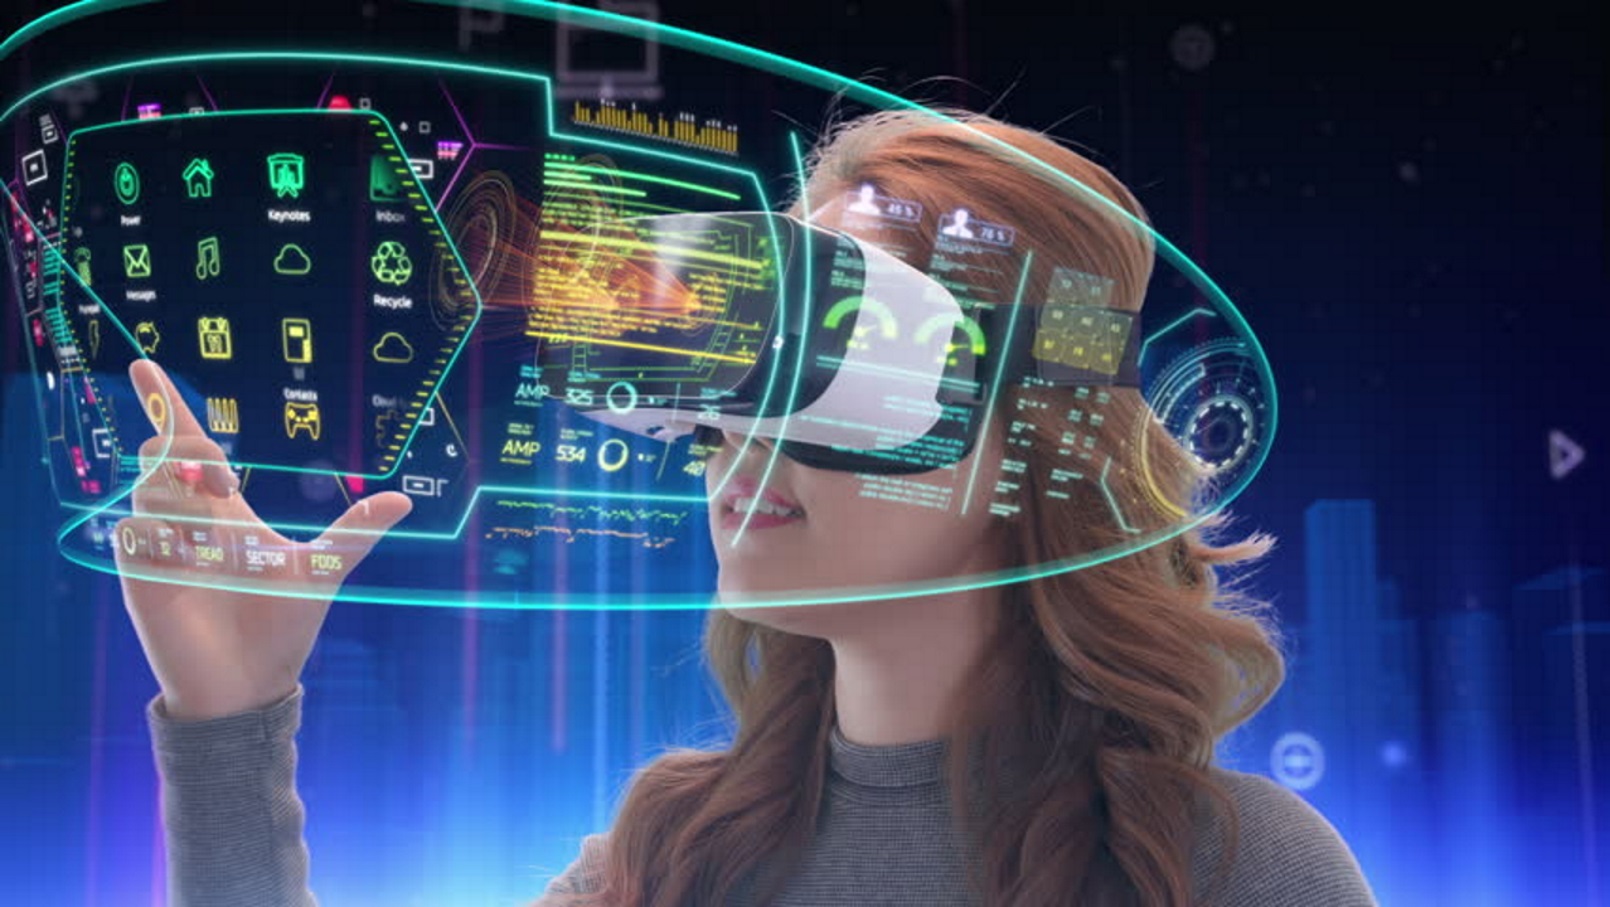 What Necessitates Analytics for VR